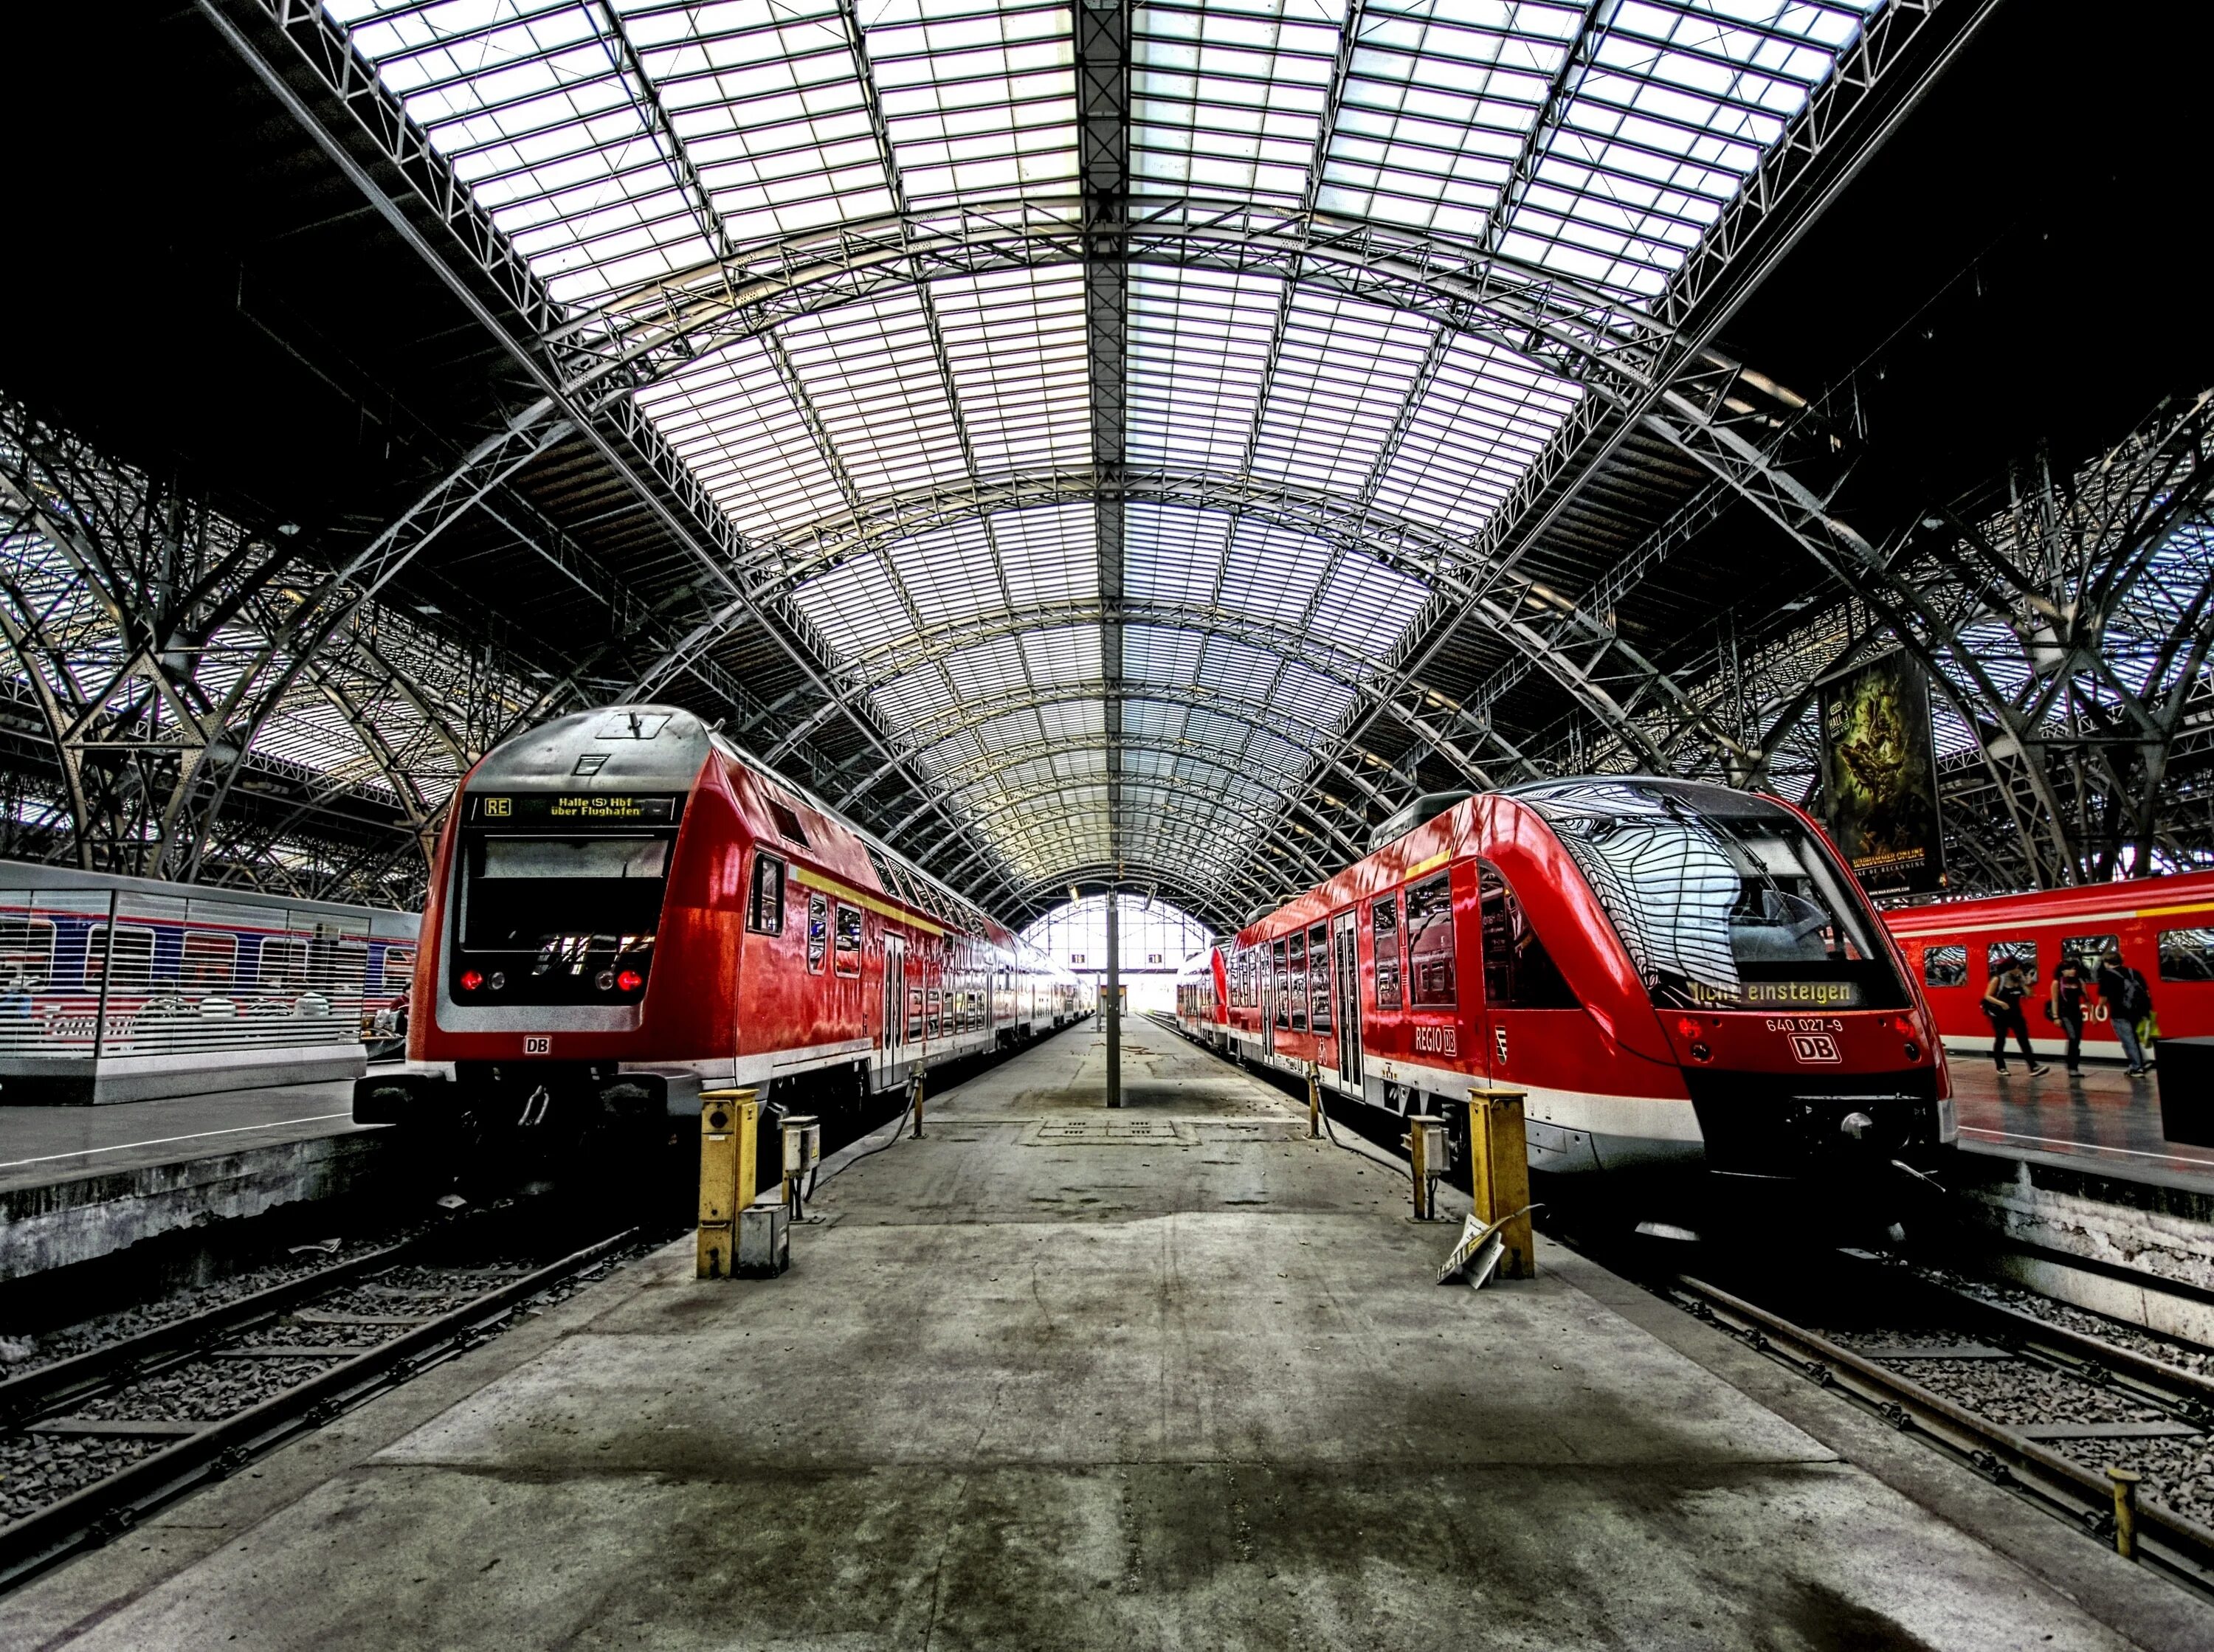 Городской транспорт вокзал. Вокзал Перон Швейцария. Киевский вокзал перроны. ЖД транспорт. Поезд на вокзале.